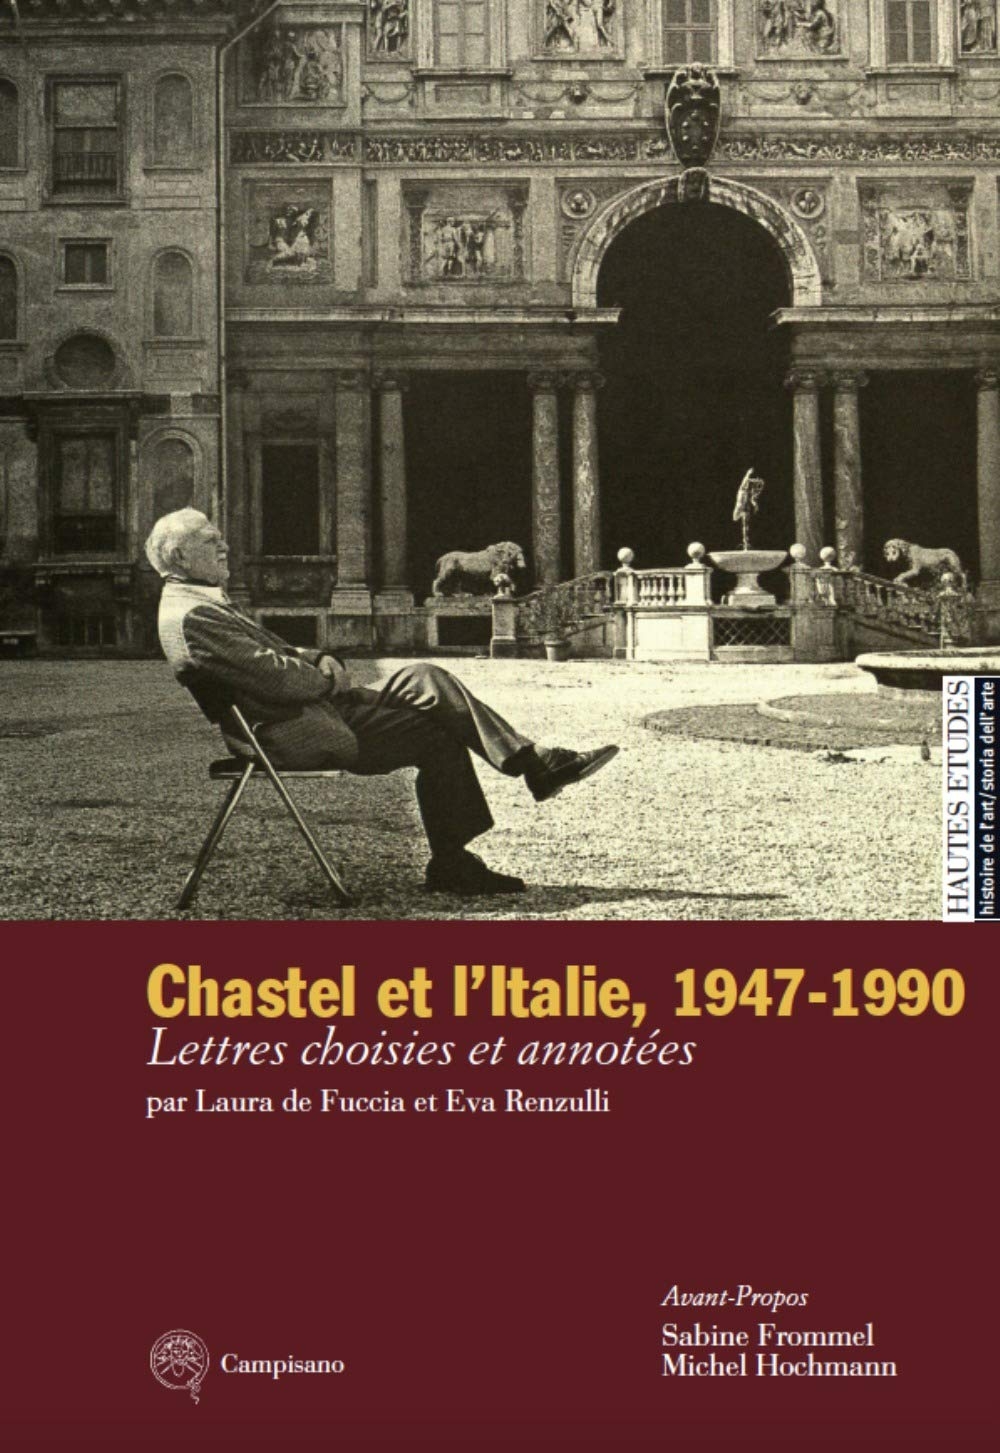 André Chastel Et l'Italie, 1947-1990. Lettres choisies et annotées - Afbeelding 1 van 1